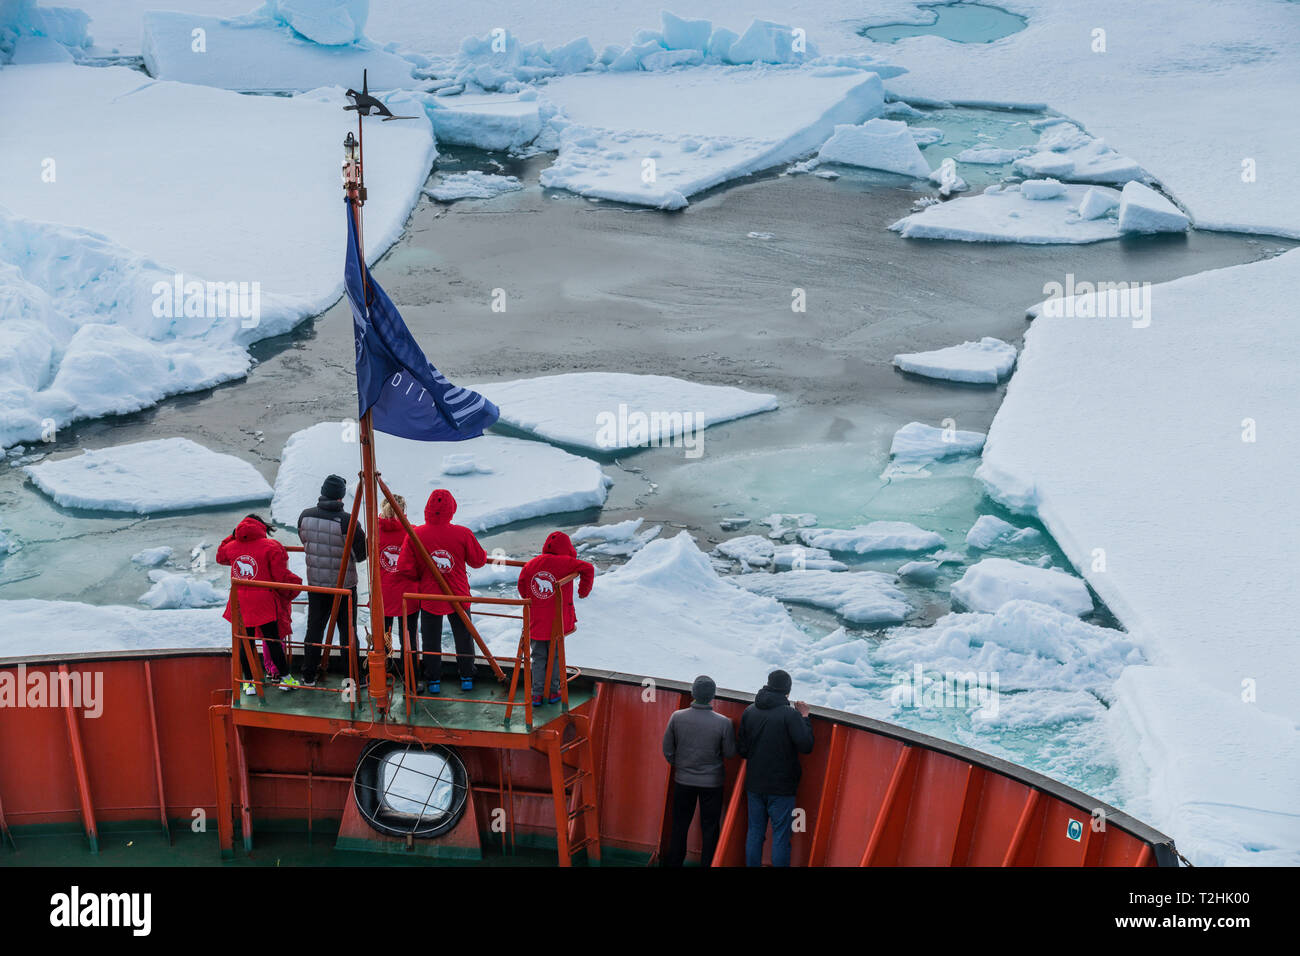 Les touristes regardant le brise-glaces à bord d'un brise-glace, Pôle Nord, de l'Arctique Banque D'Images